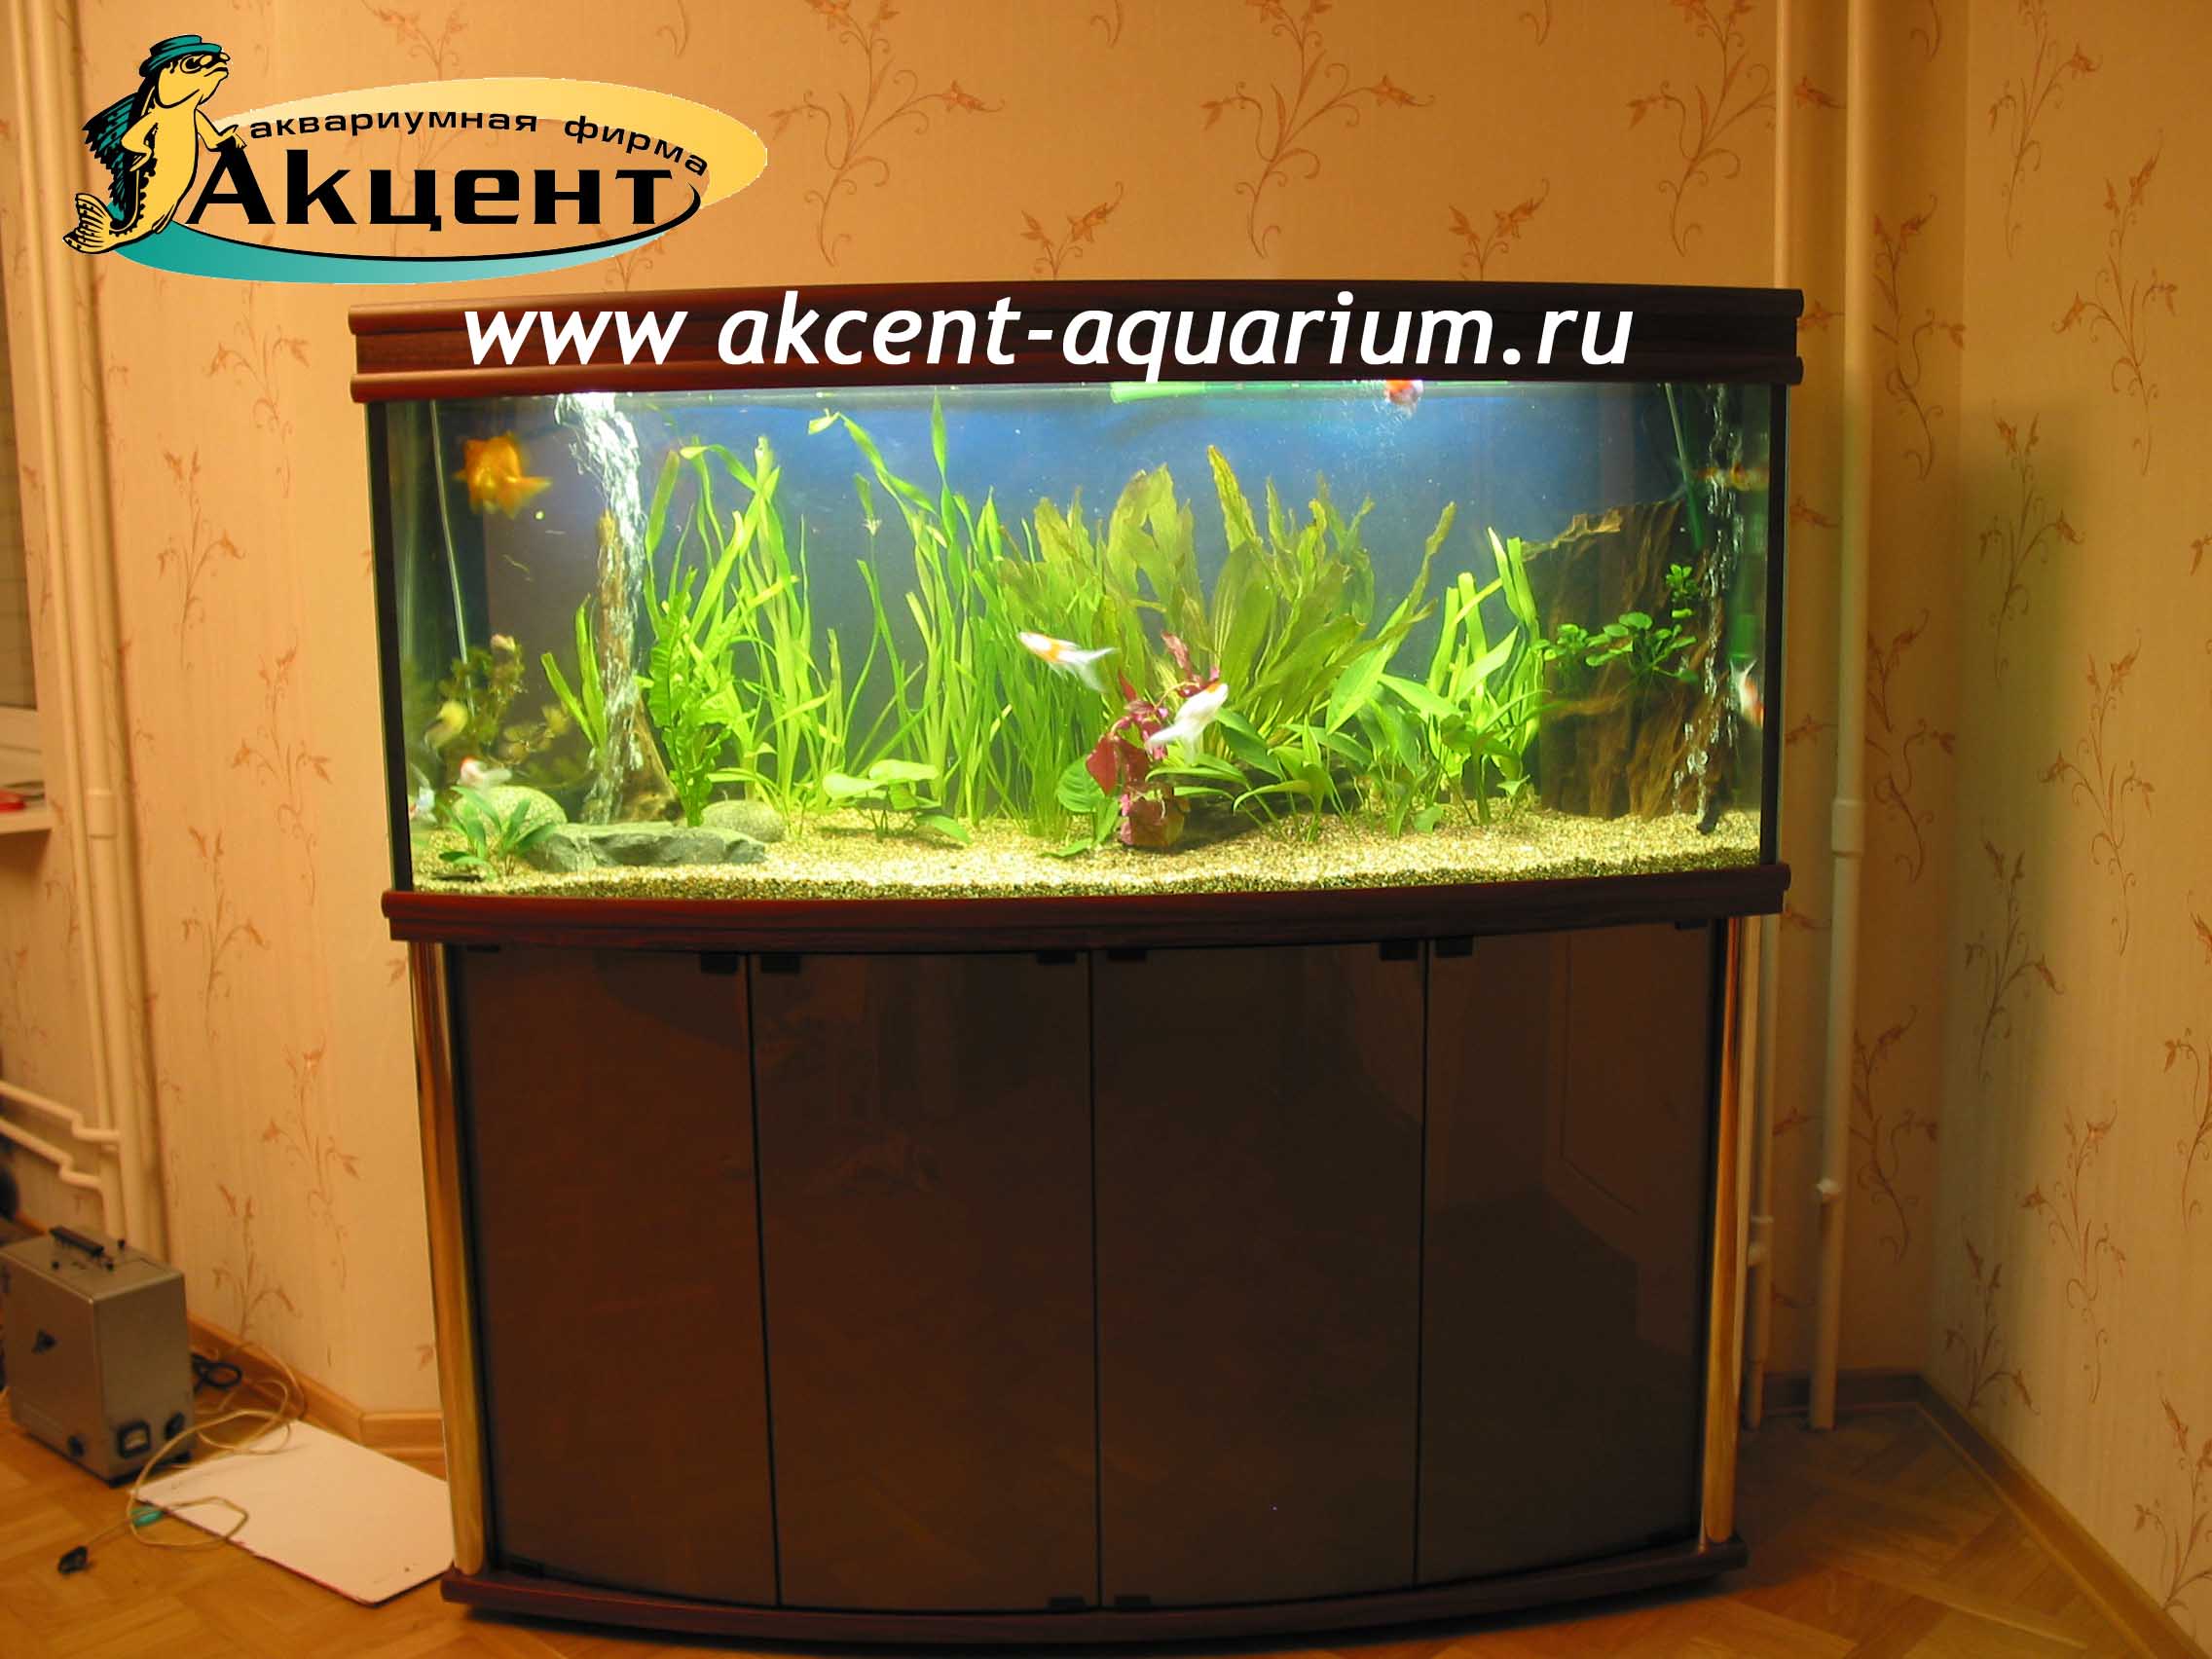 Акцент-аквариум, аквариум 400 литров, с гнутым передним стеклом